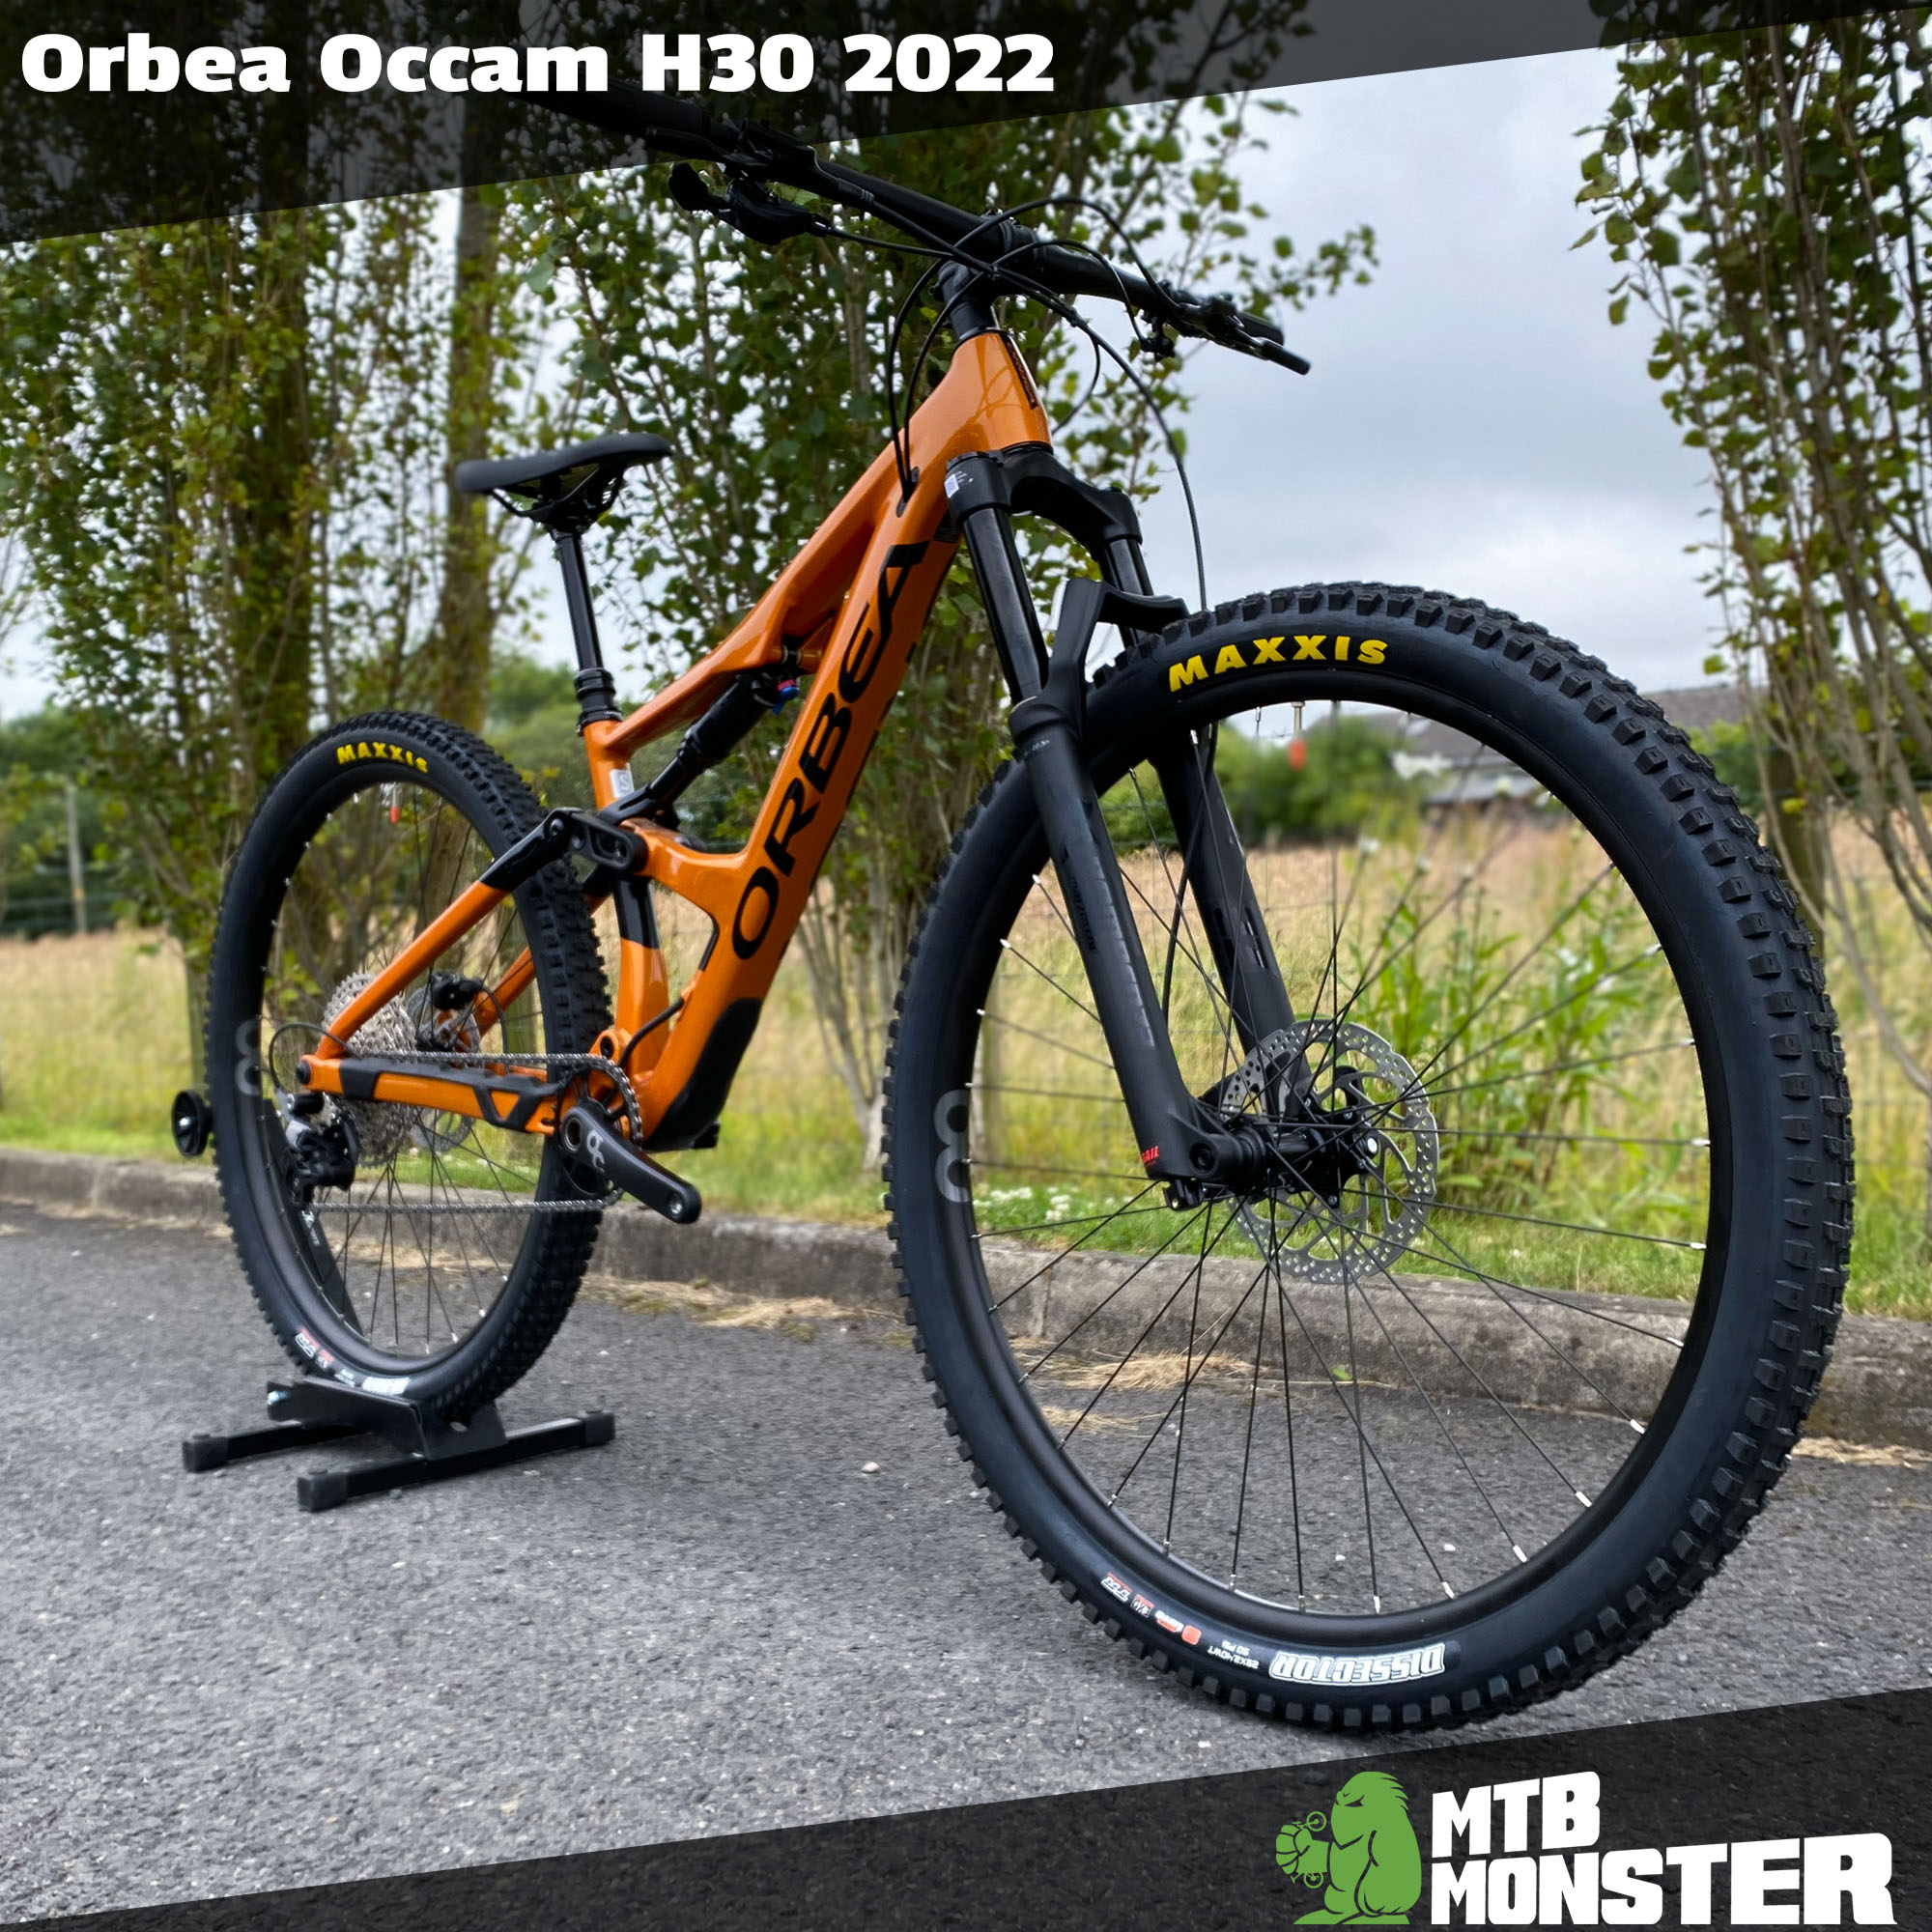 Orbea Occam H30 2022